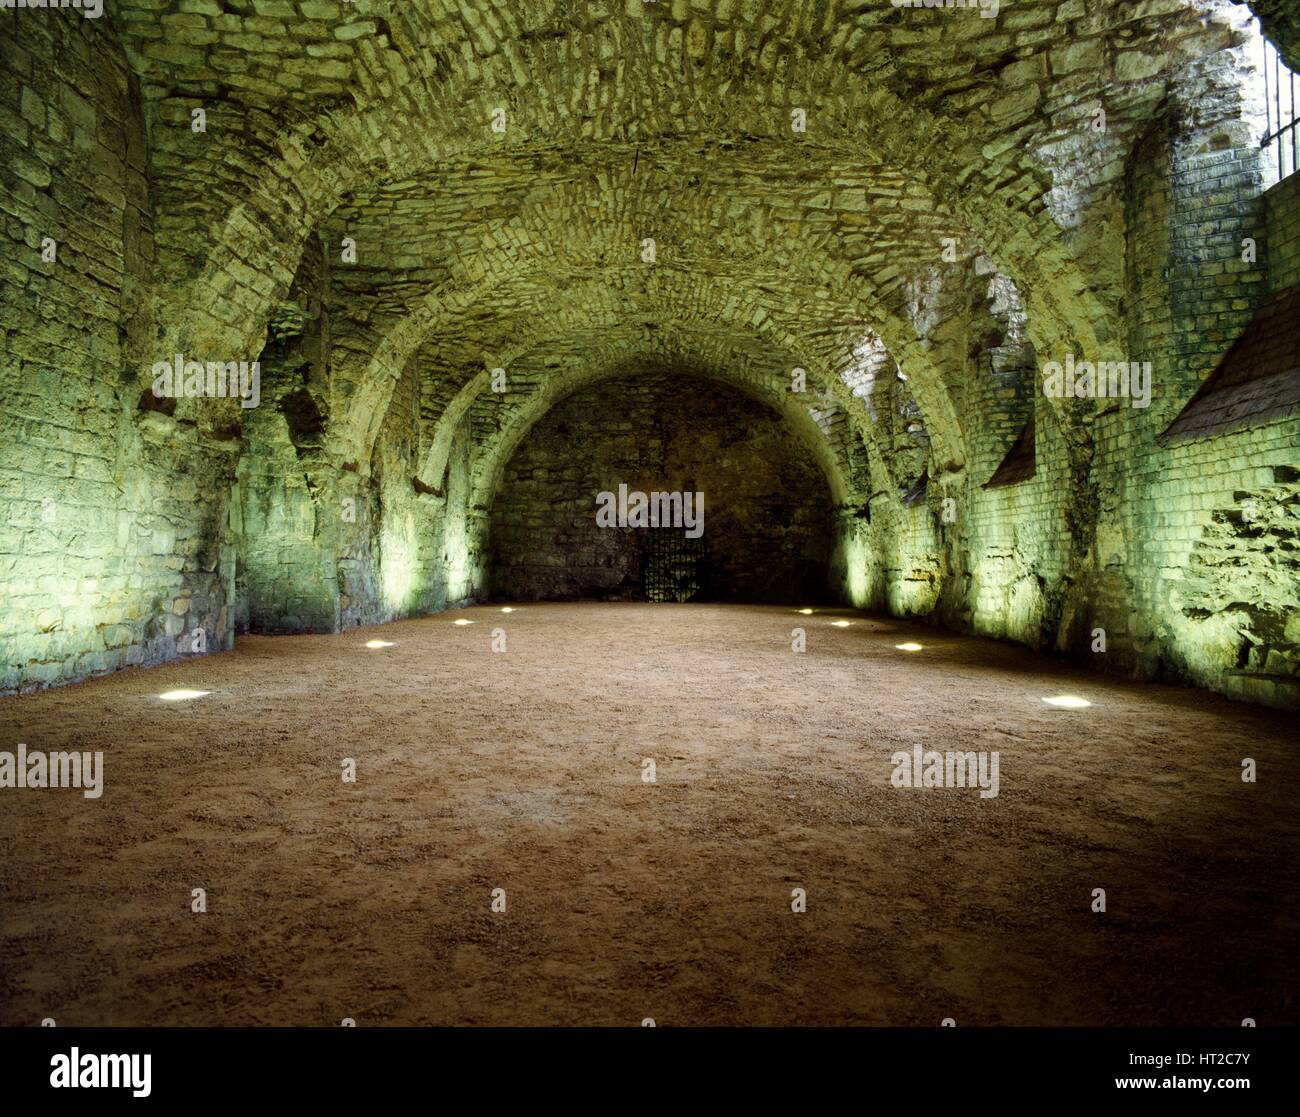 Interno del undercroft del Lincoln medievale Palazzo del Vescovo, Lincolnshire, c2000s(?). Artista: Storico Inghilterra fotografo personale. Foto Stock